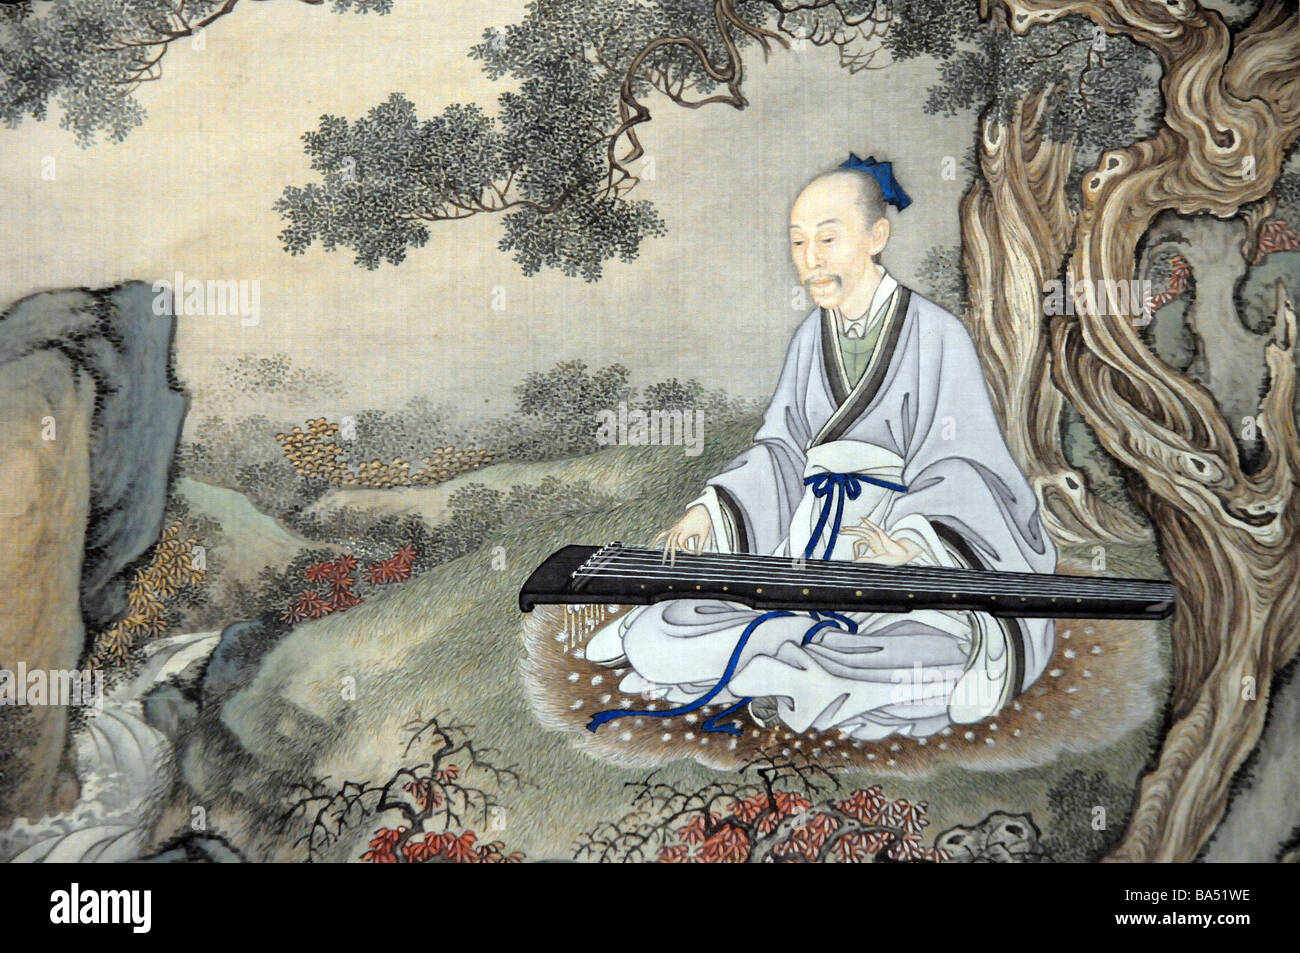 Antike chinesische Malerei kluger Mann eine Guqin - eine 7-saitige Zither, die klassische chinesische Musikinstrument zu spielen. Stockfoto